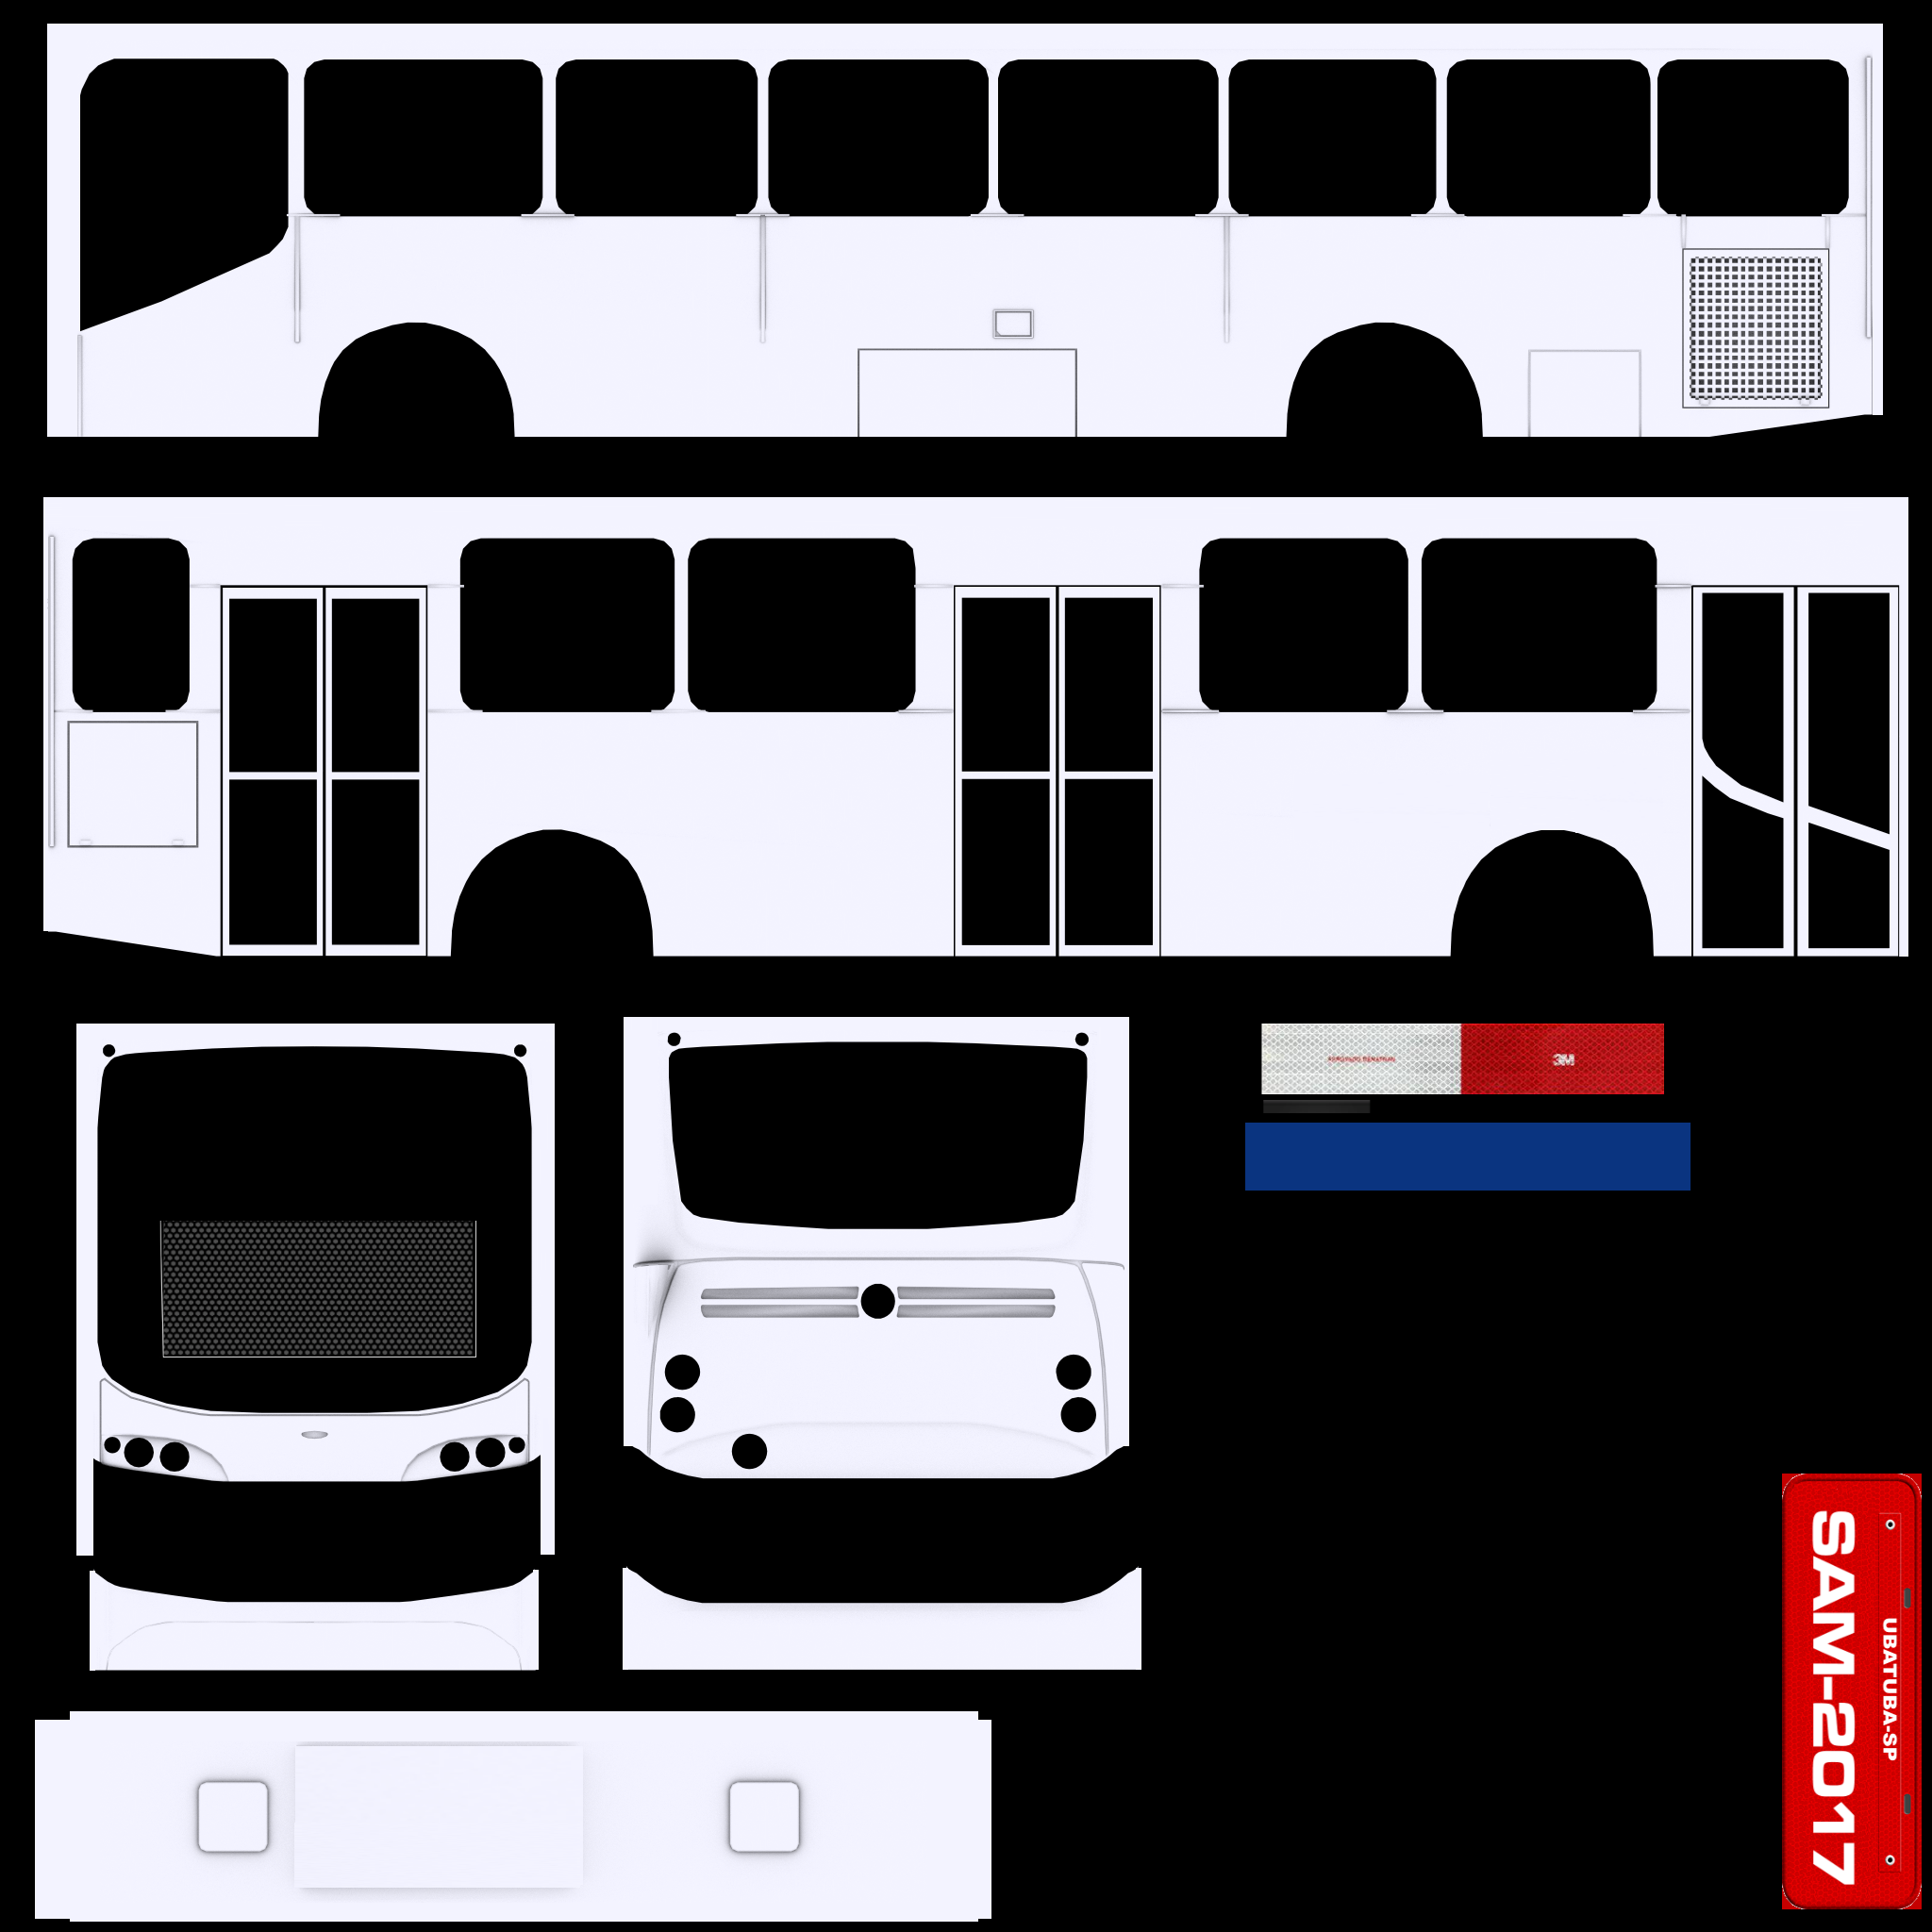 MiBRTS, Wiki Proton Bus